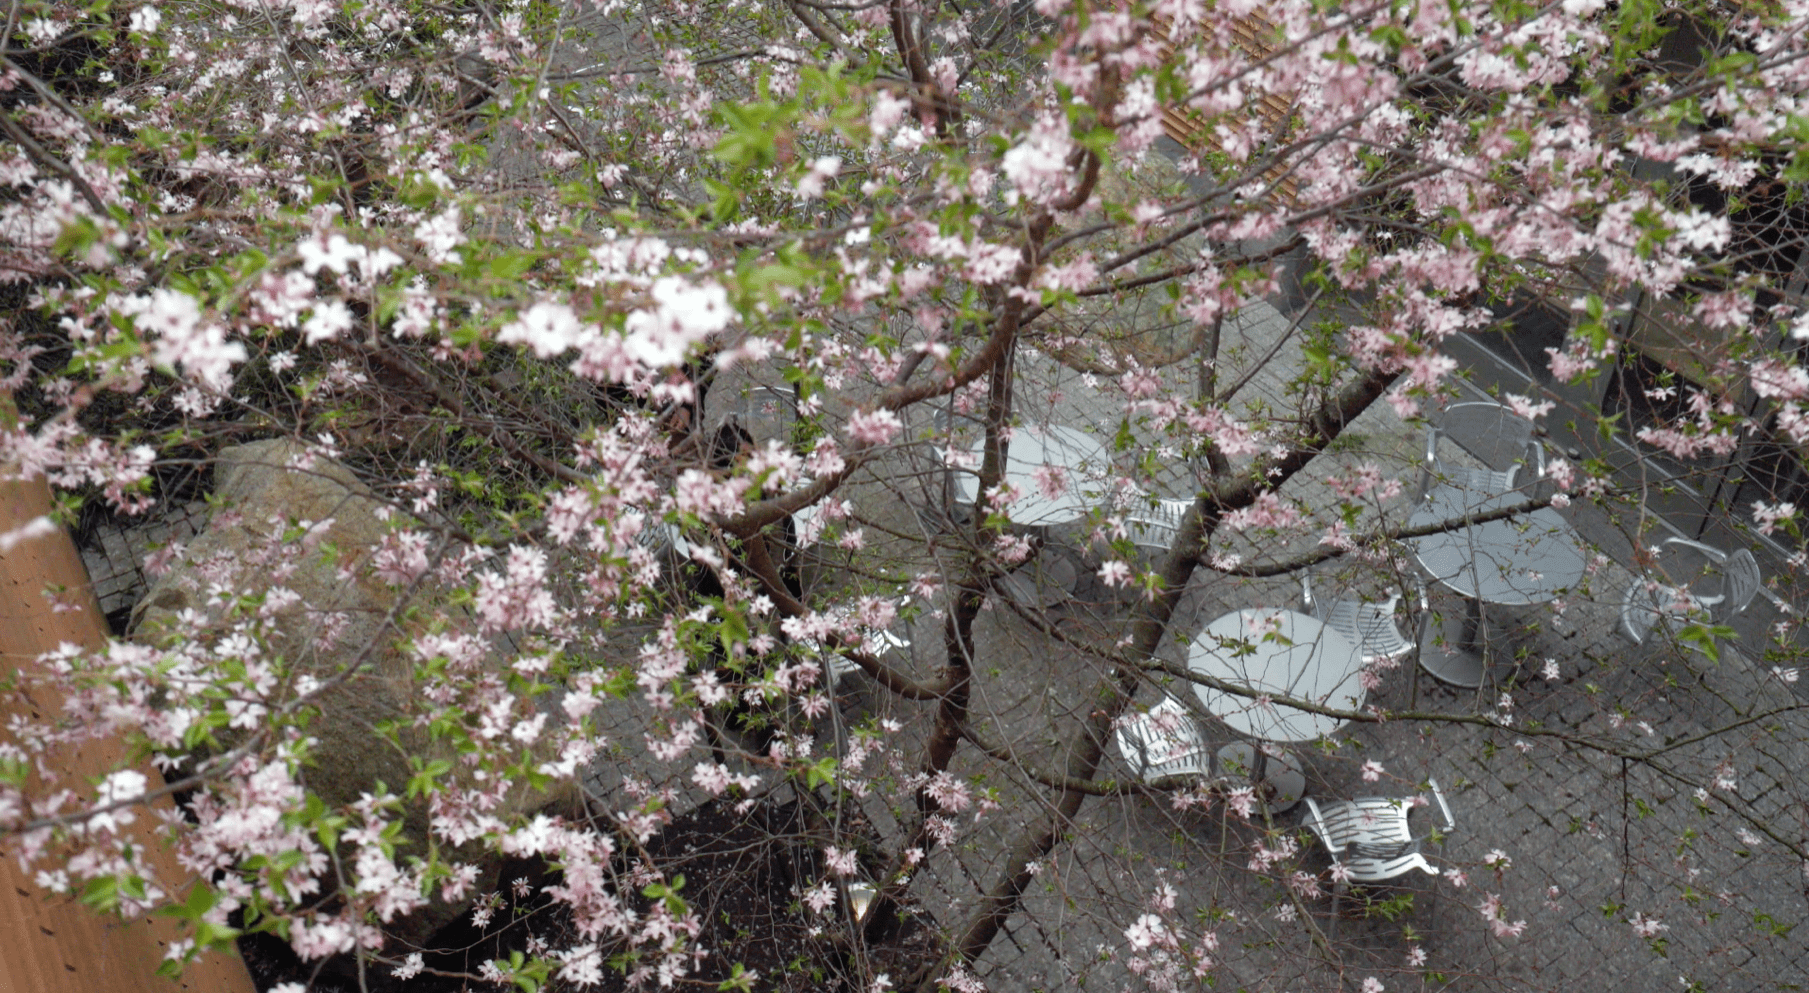 Pink flowers in tree at Harvard